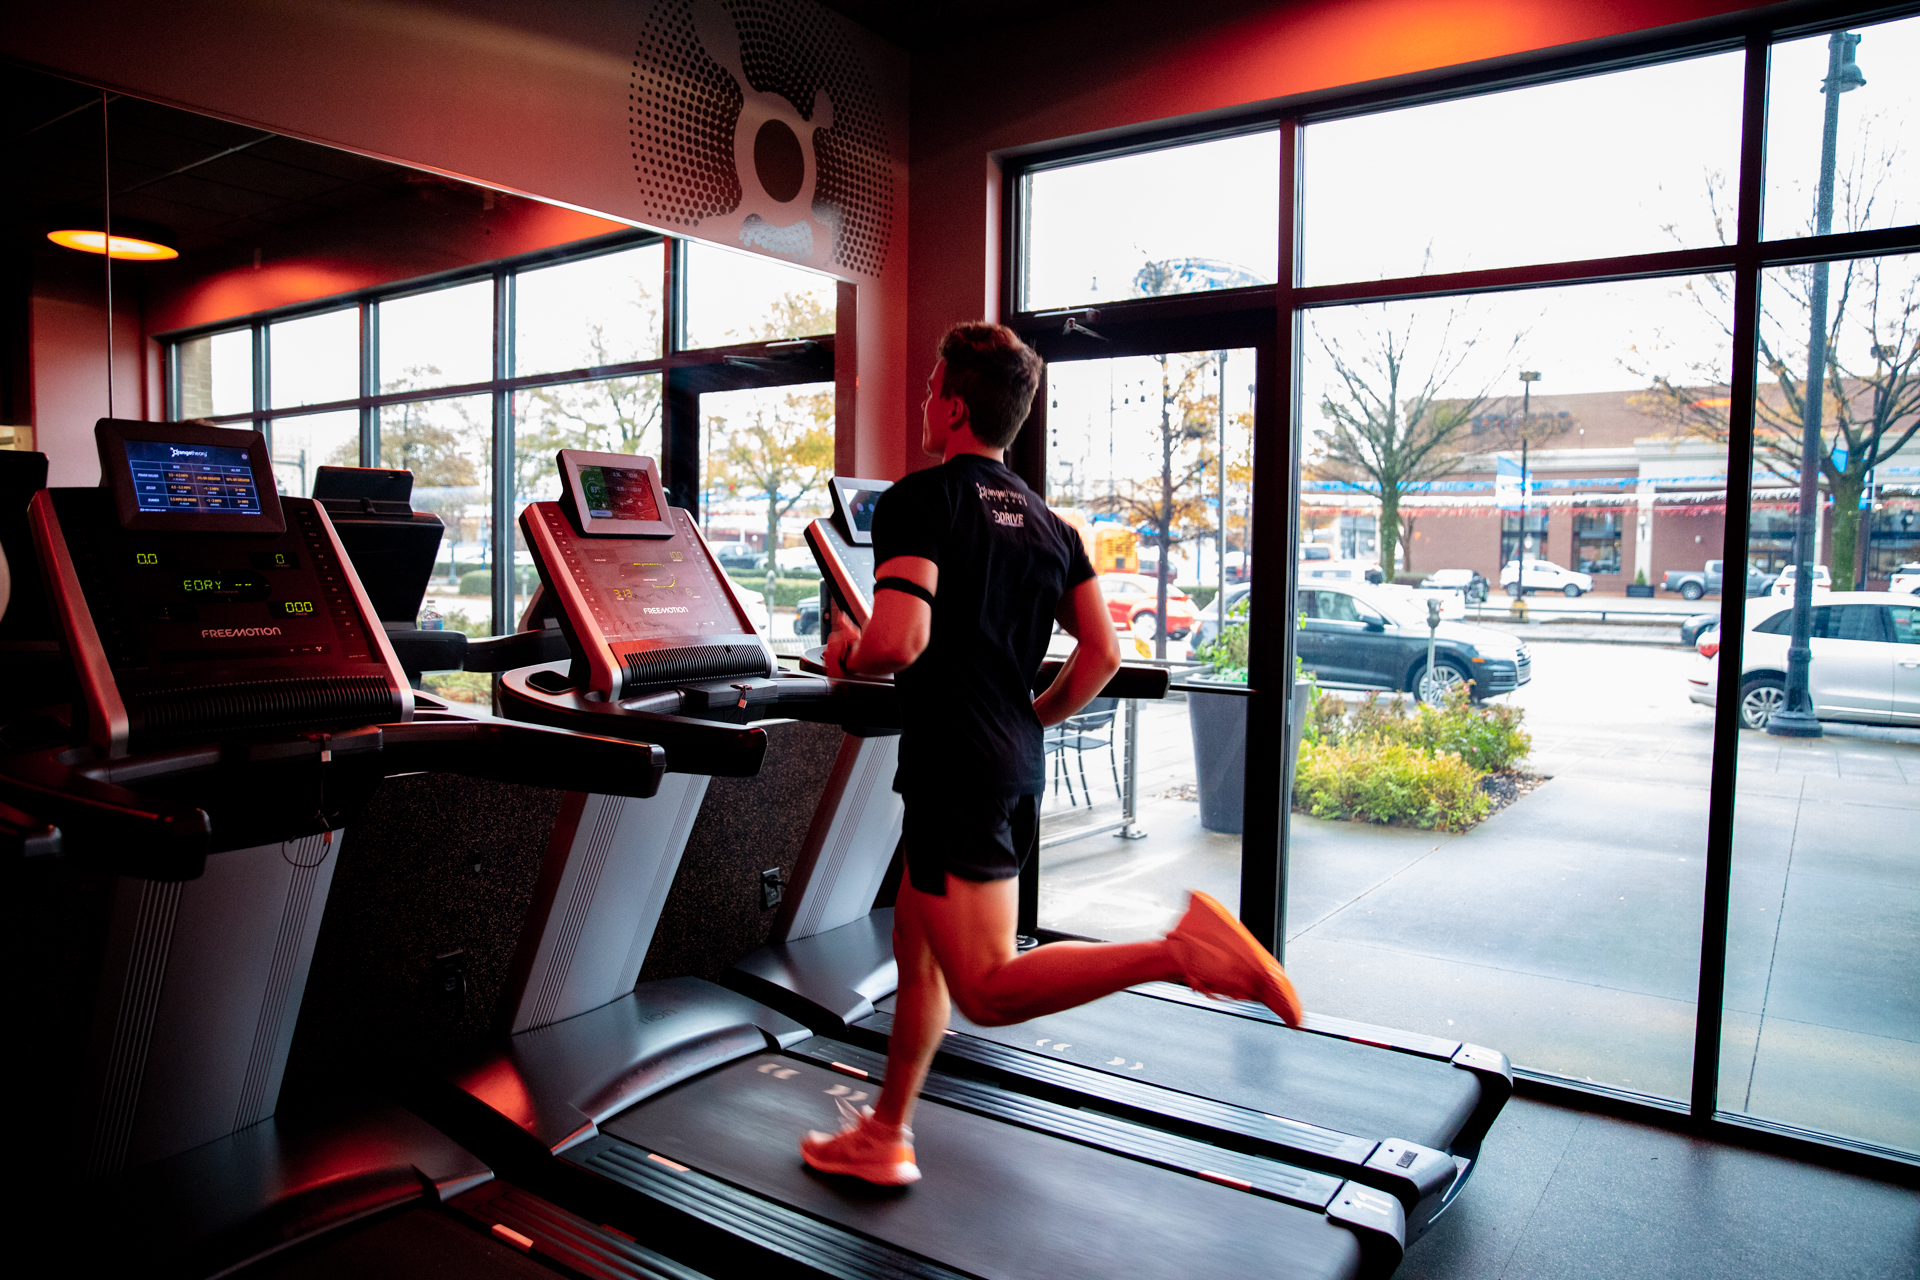 orangetheory treadmill